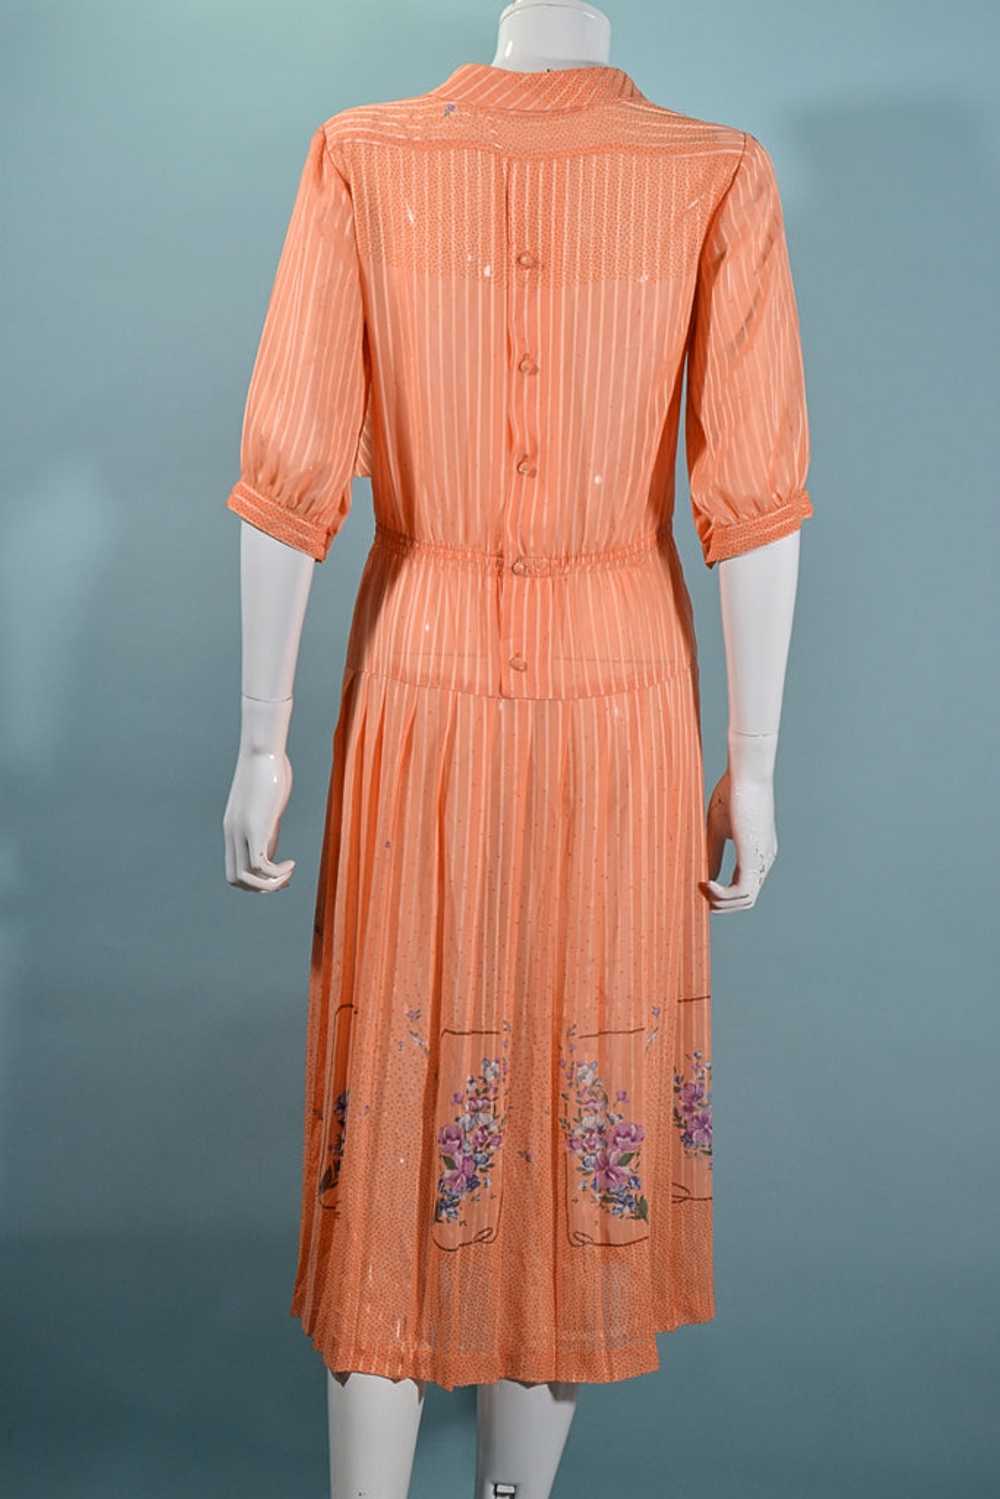 Vintage 70s Does 30s Floral Print Dress, Peach Se… - image 10